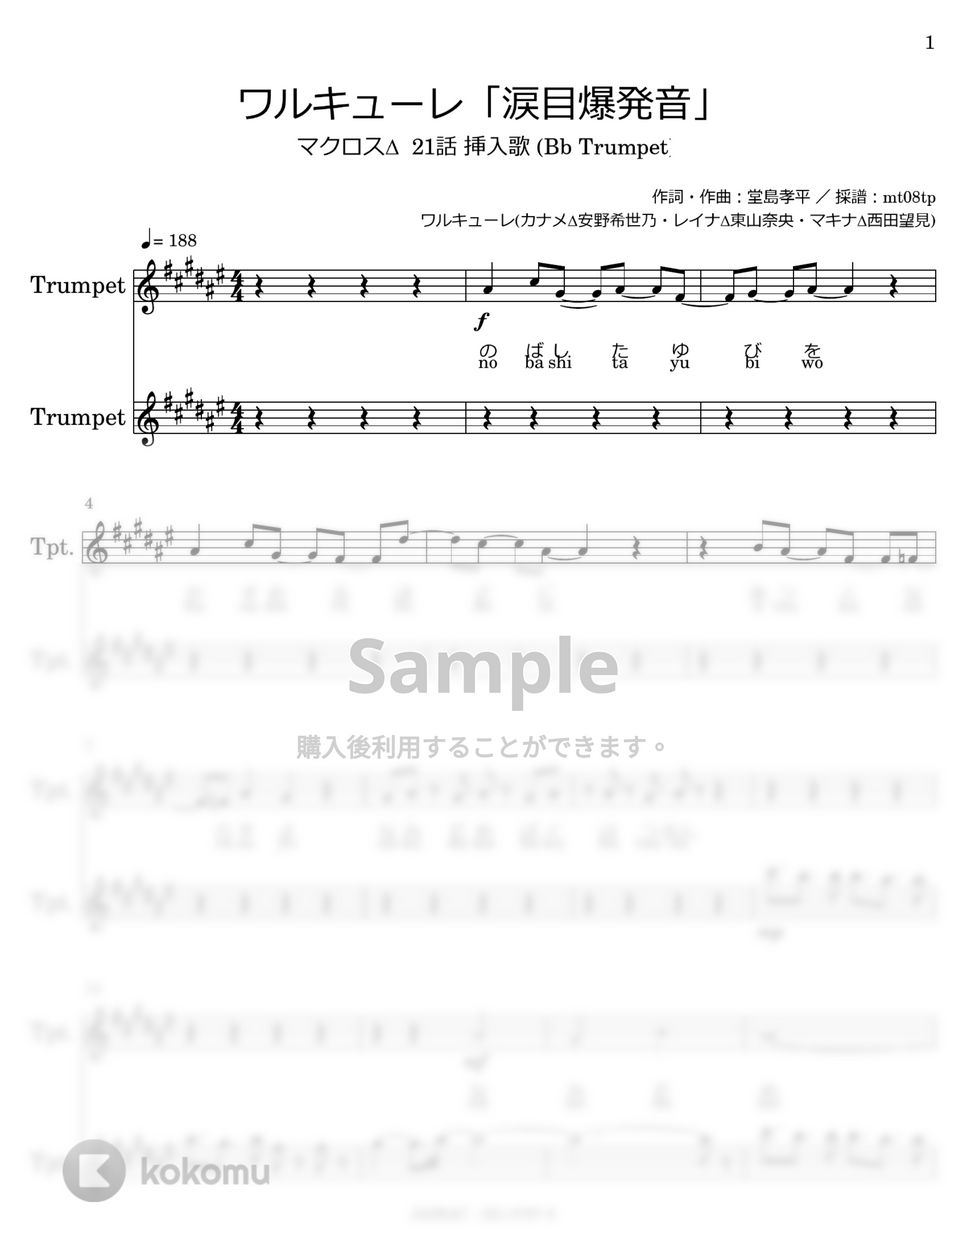 ワルキューレ - 涙目爆発音 (Bb Trumpet) by mt08tp